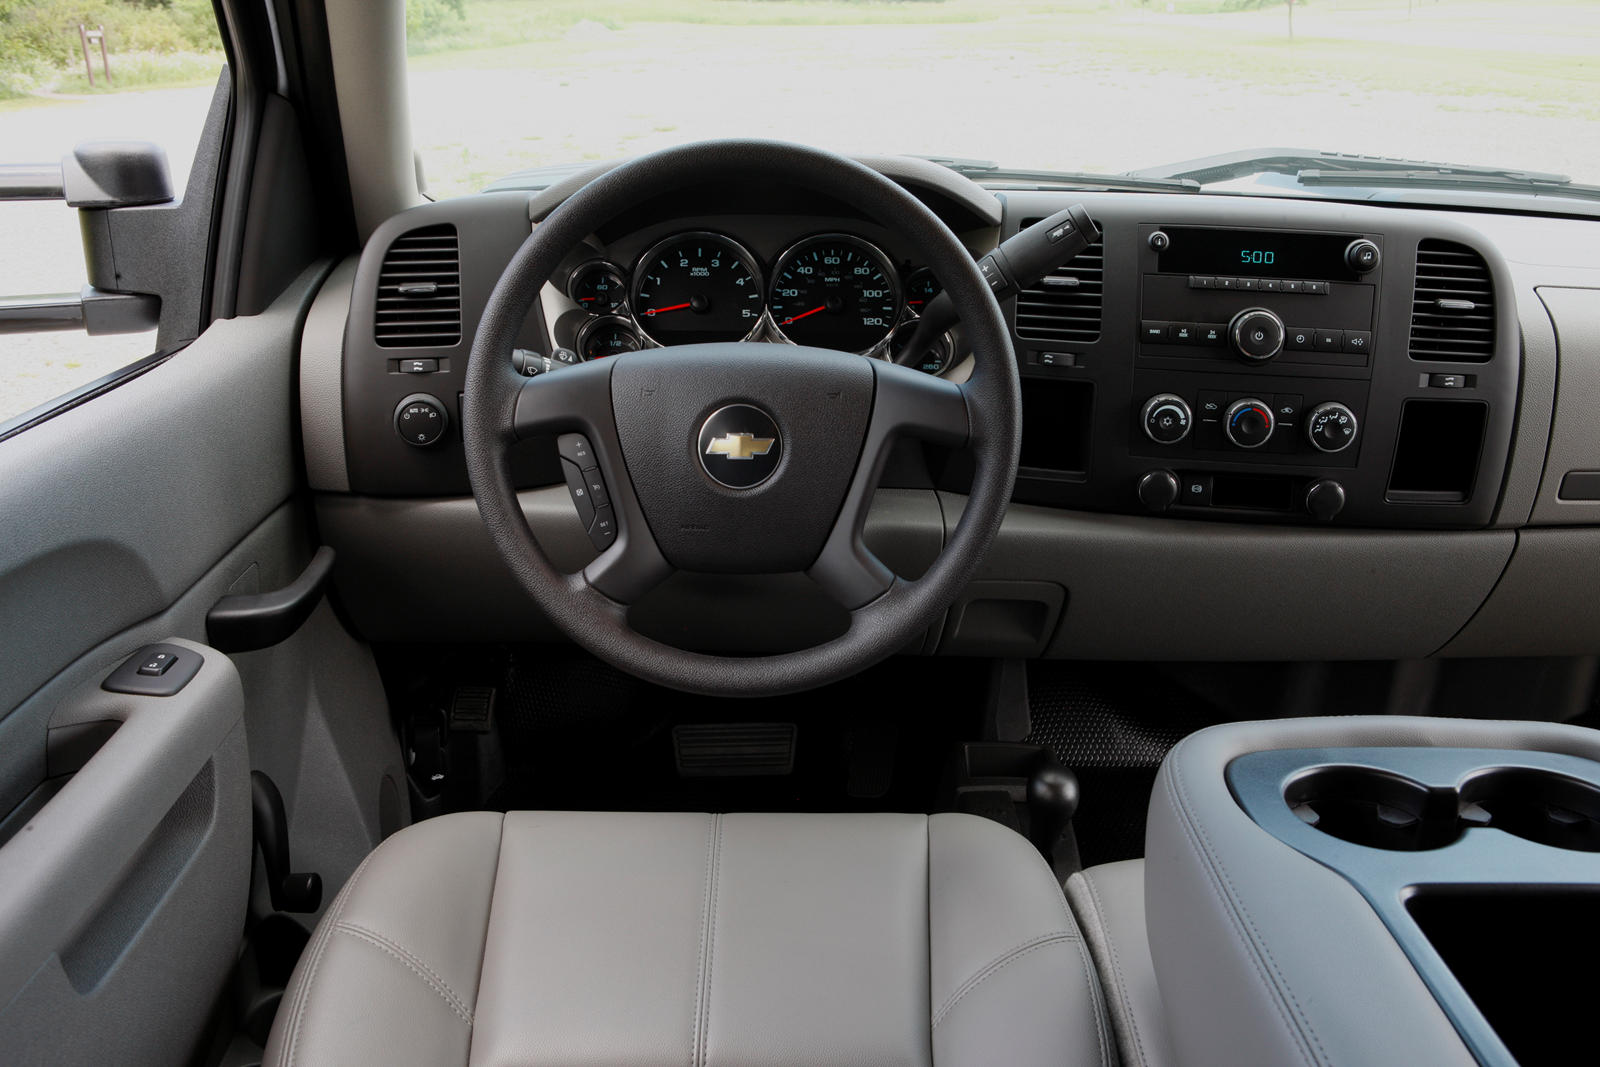 2012 Chevrolet Silverado 2500HD Steering Wheel